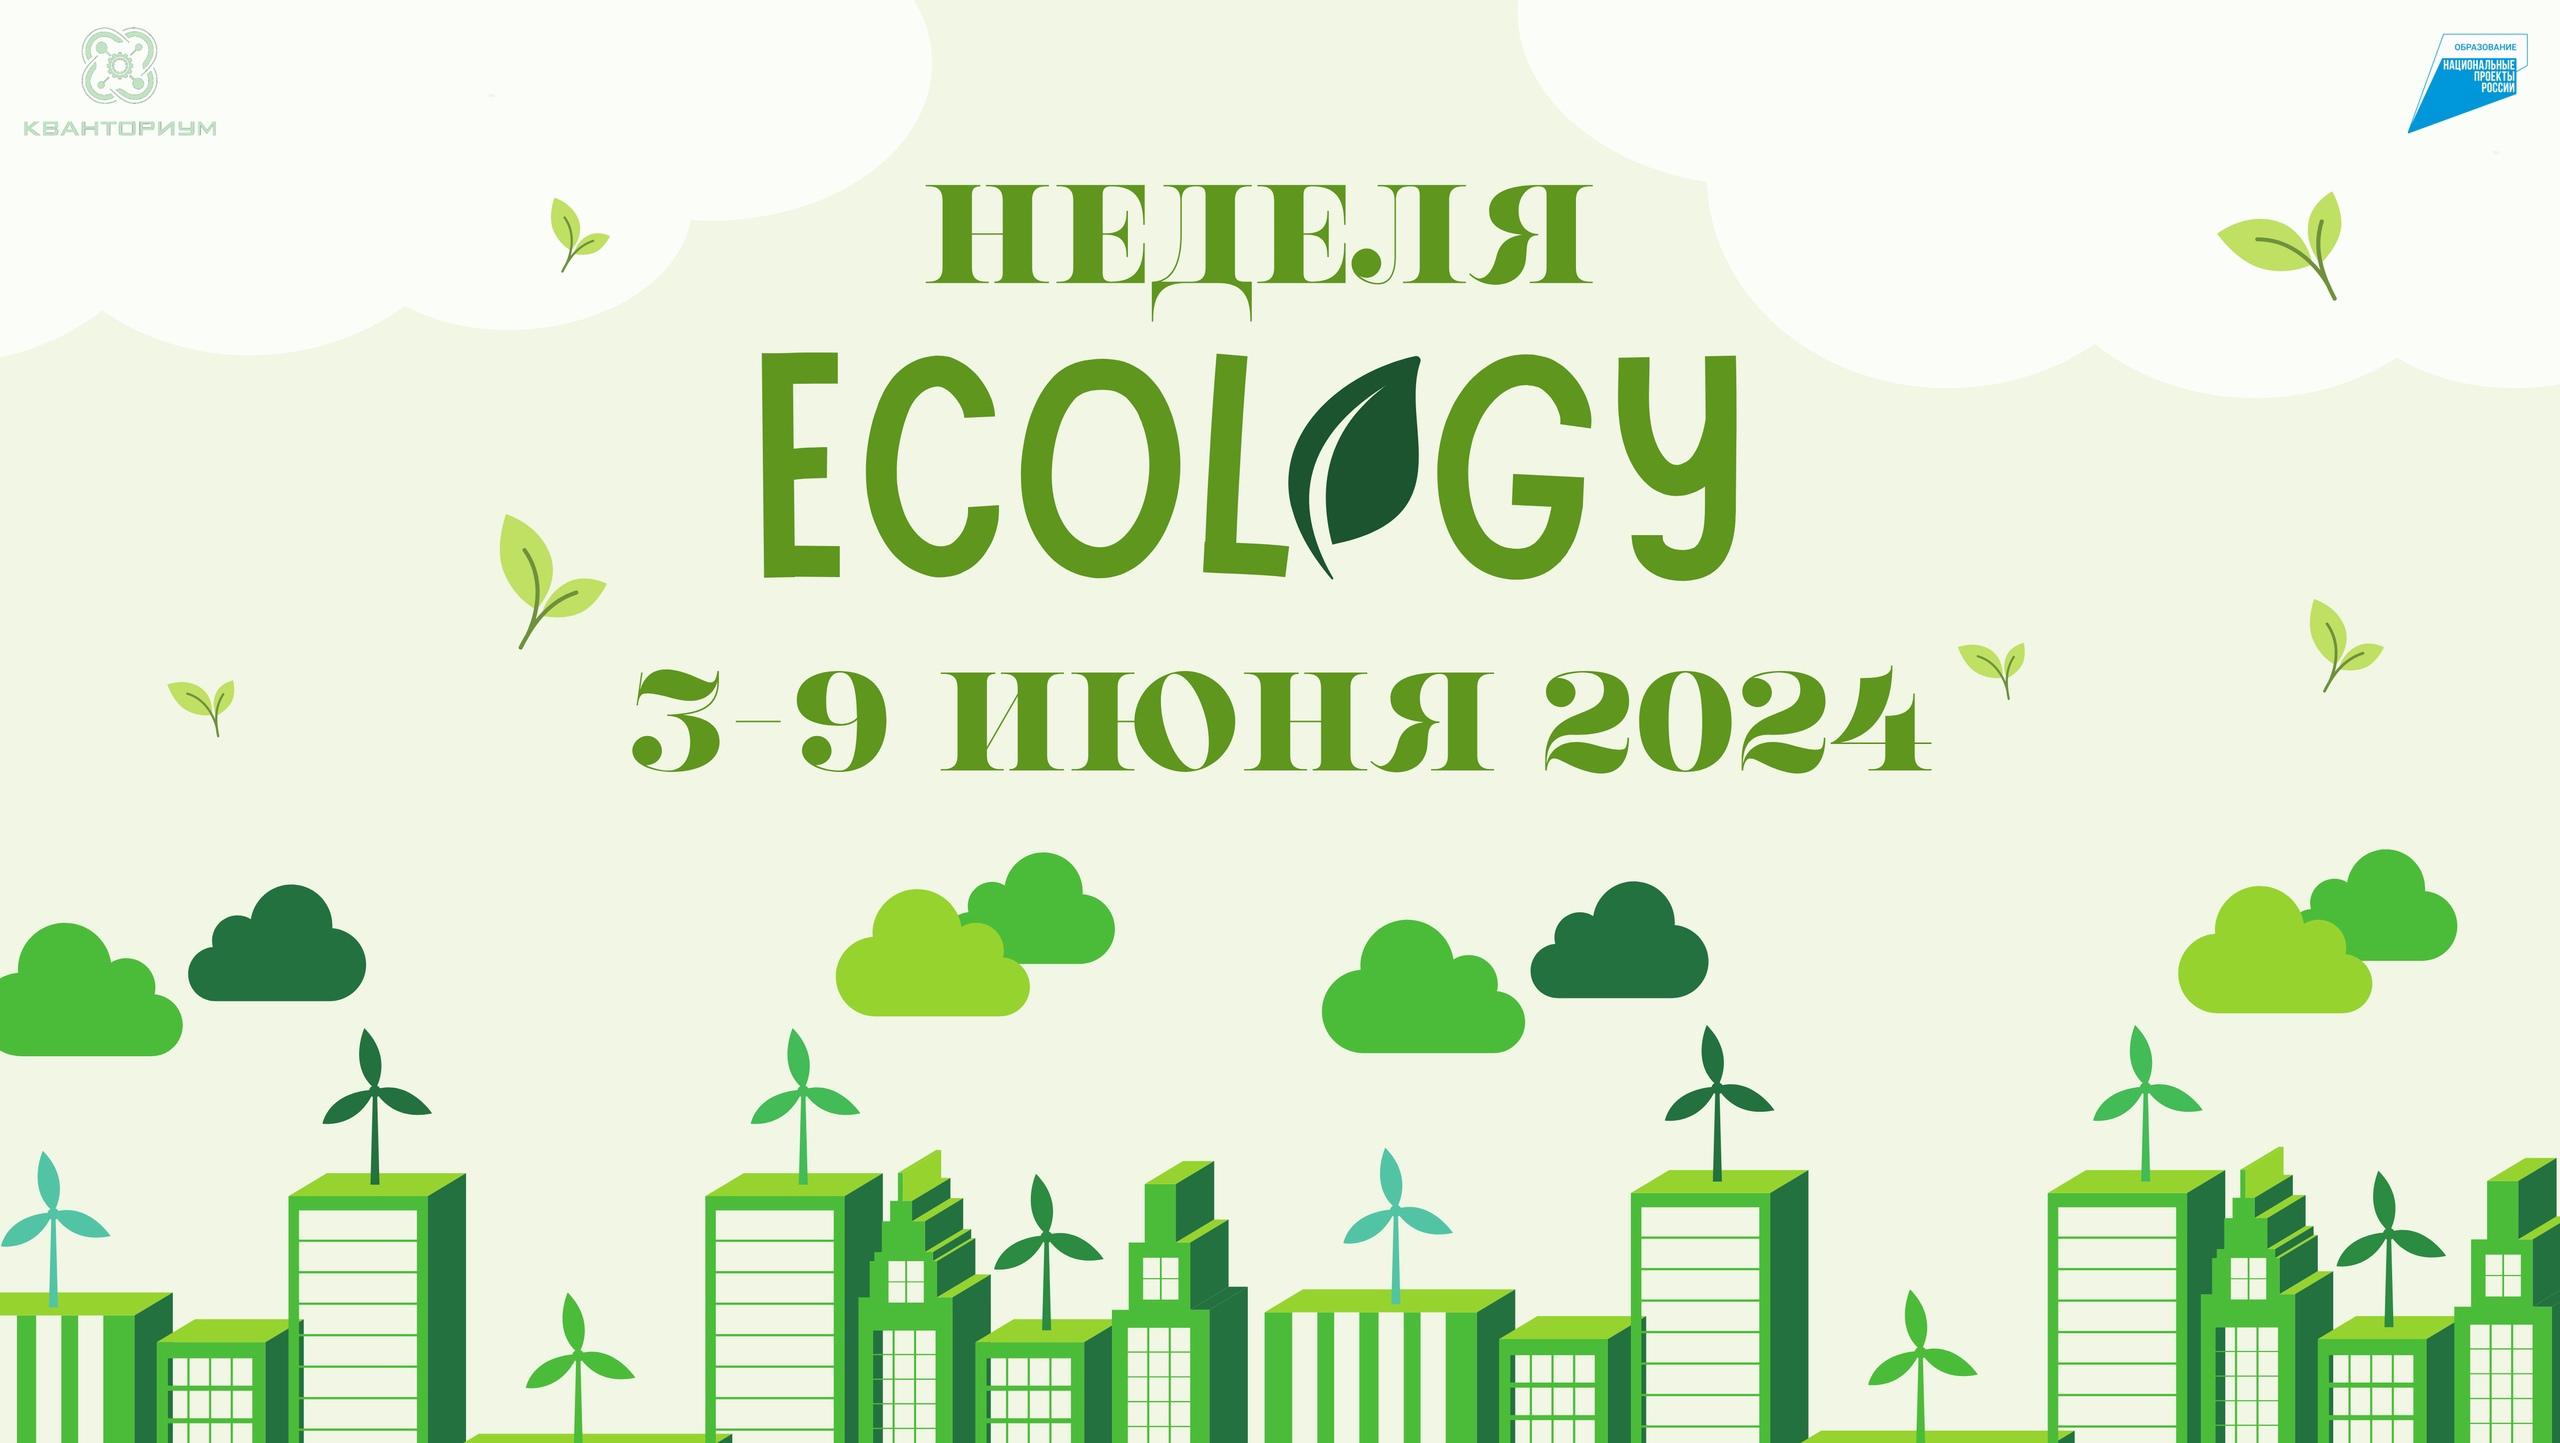 ​3-9 июня 2024 Неделя экологии в ДТ "Кванториум"